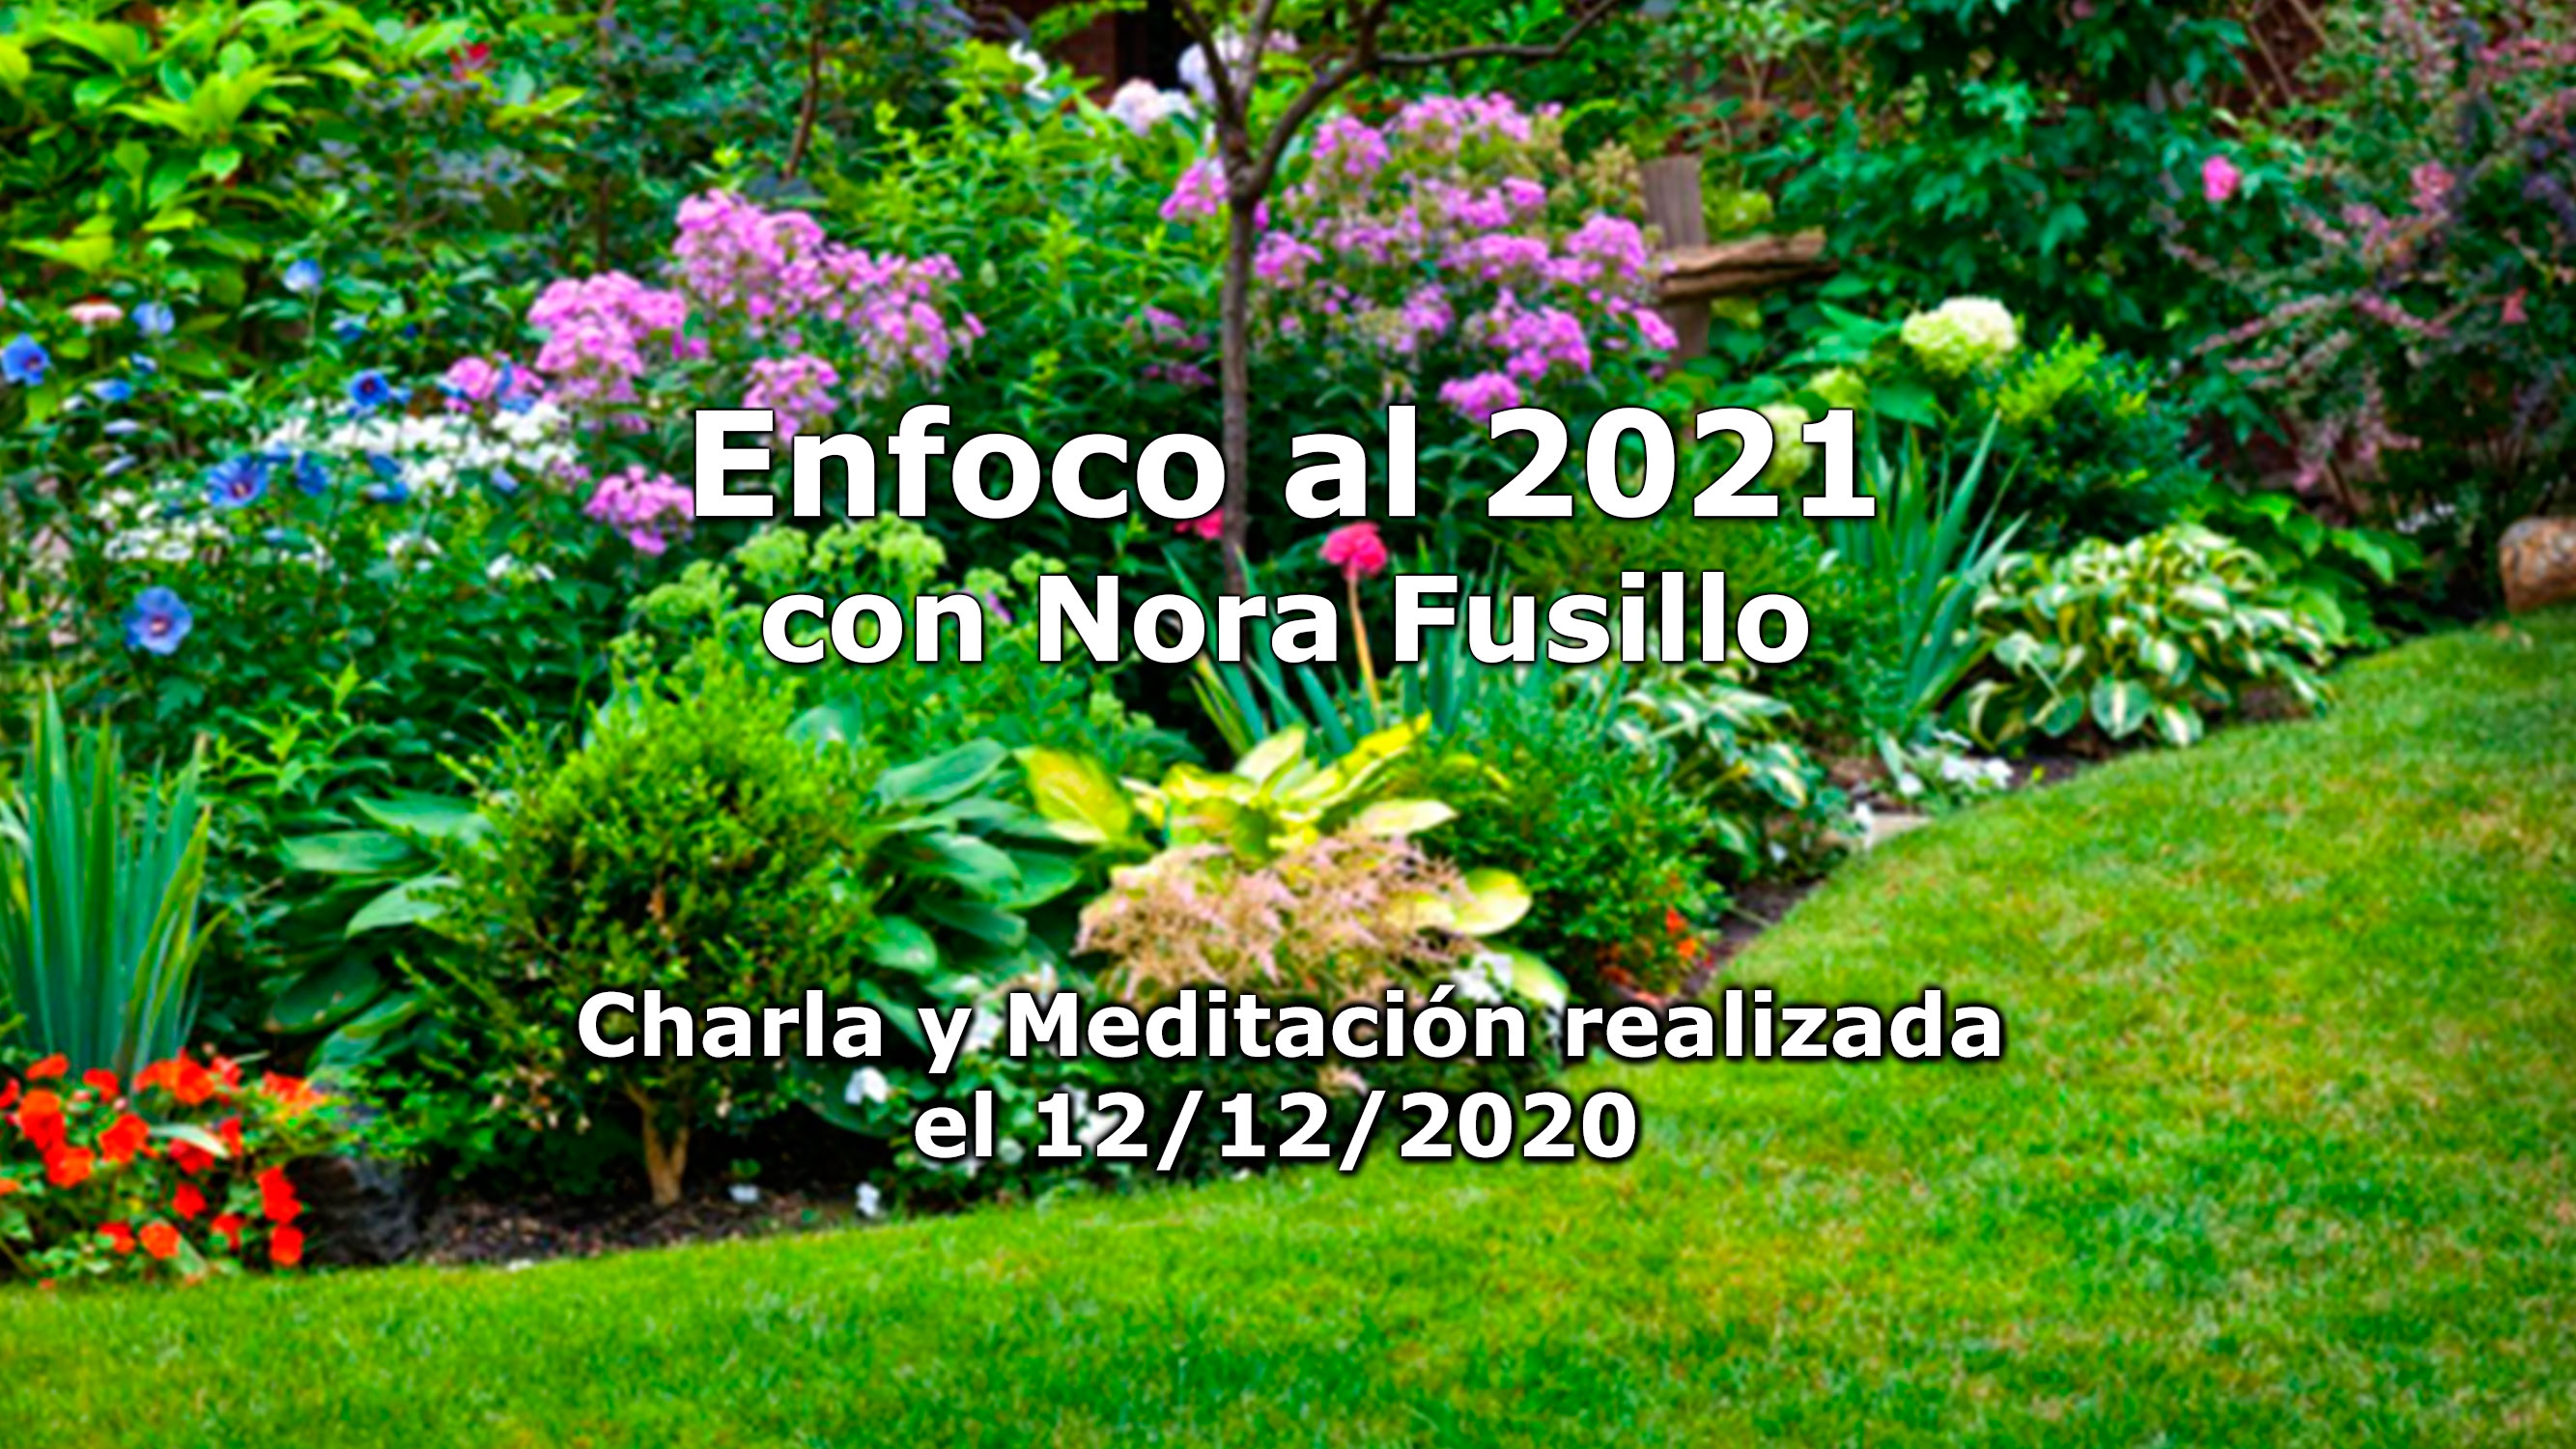 ENFOCO 2021: Charla y meditación